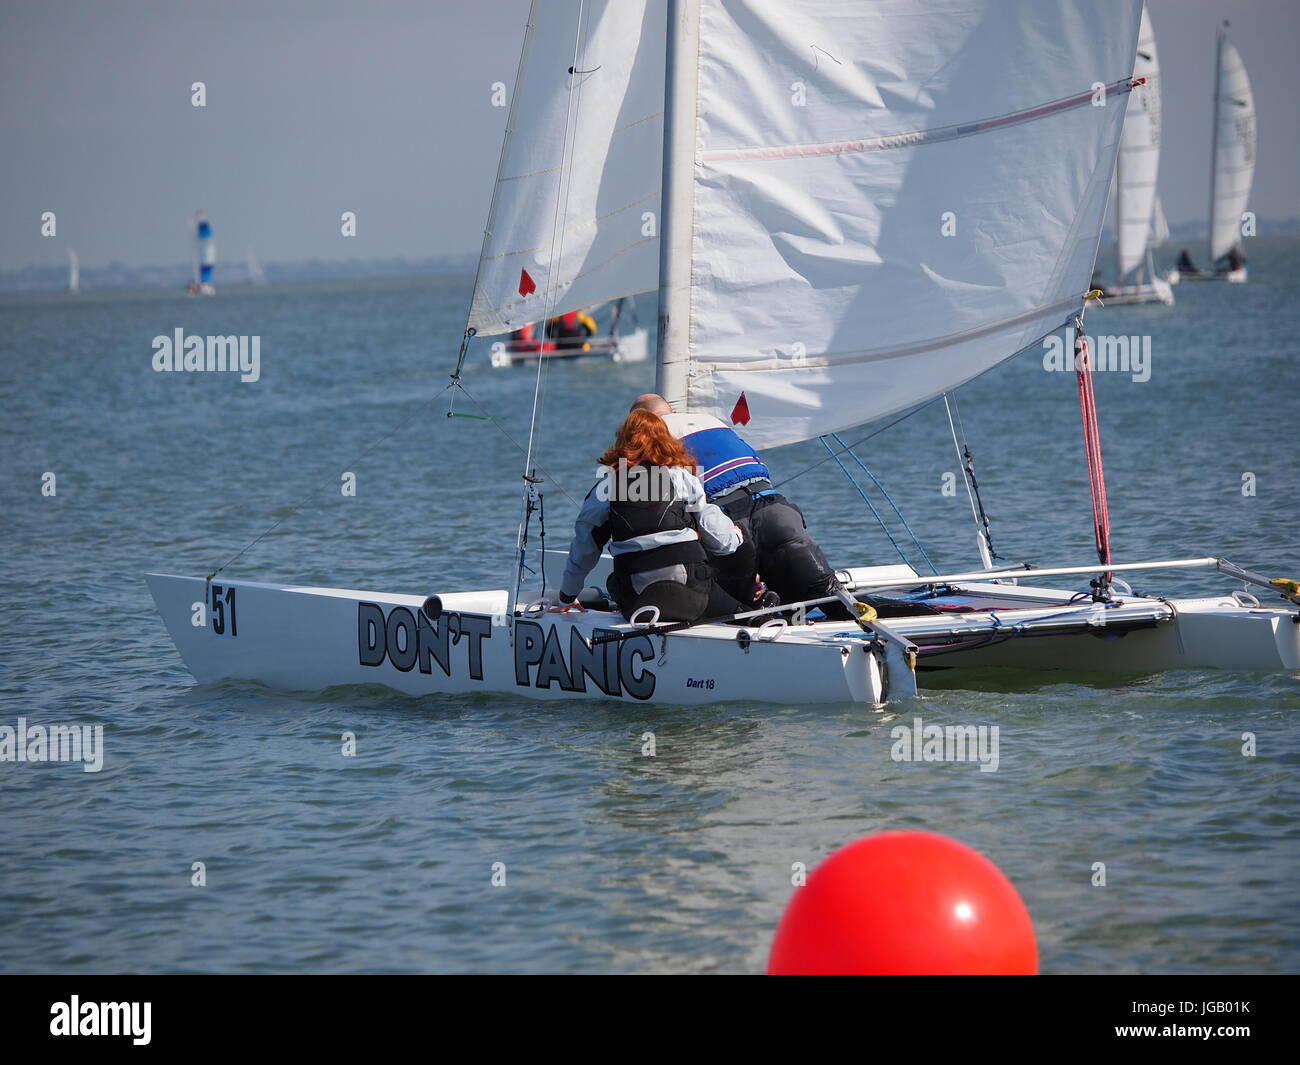 A Dart 18 catamaran called 'Don't Panic' Stock Photo - Alamy